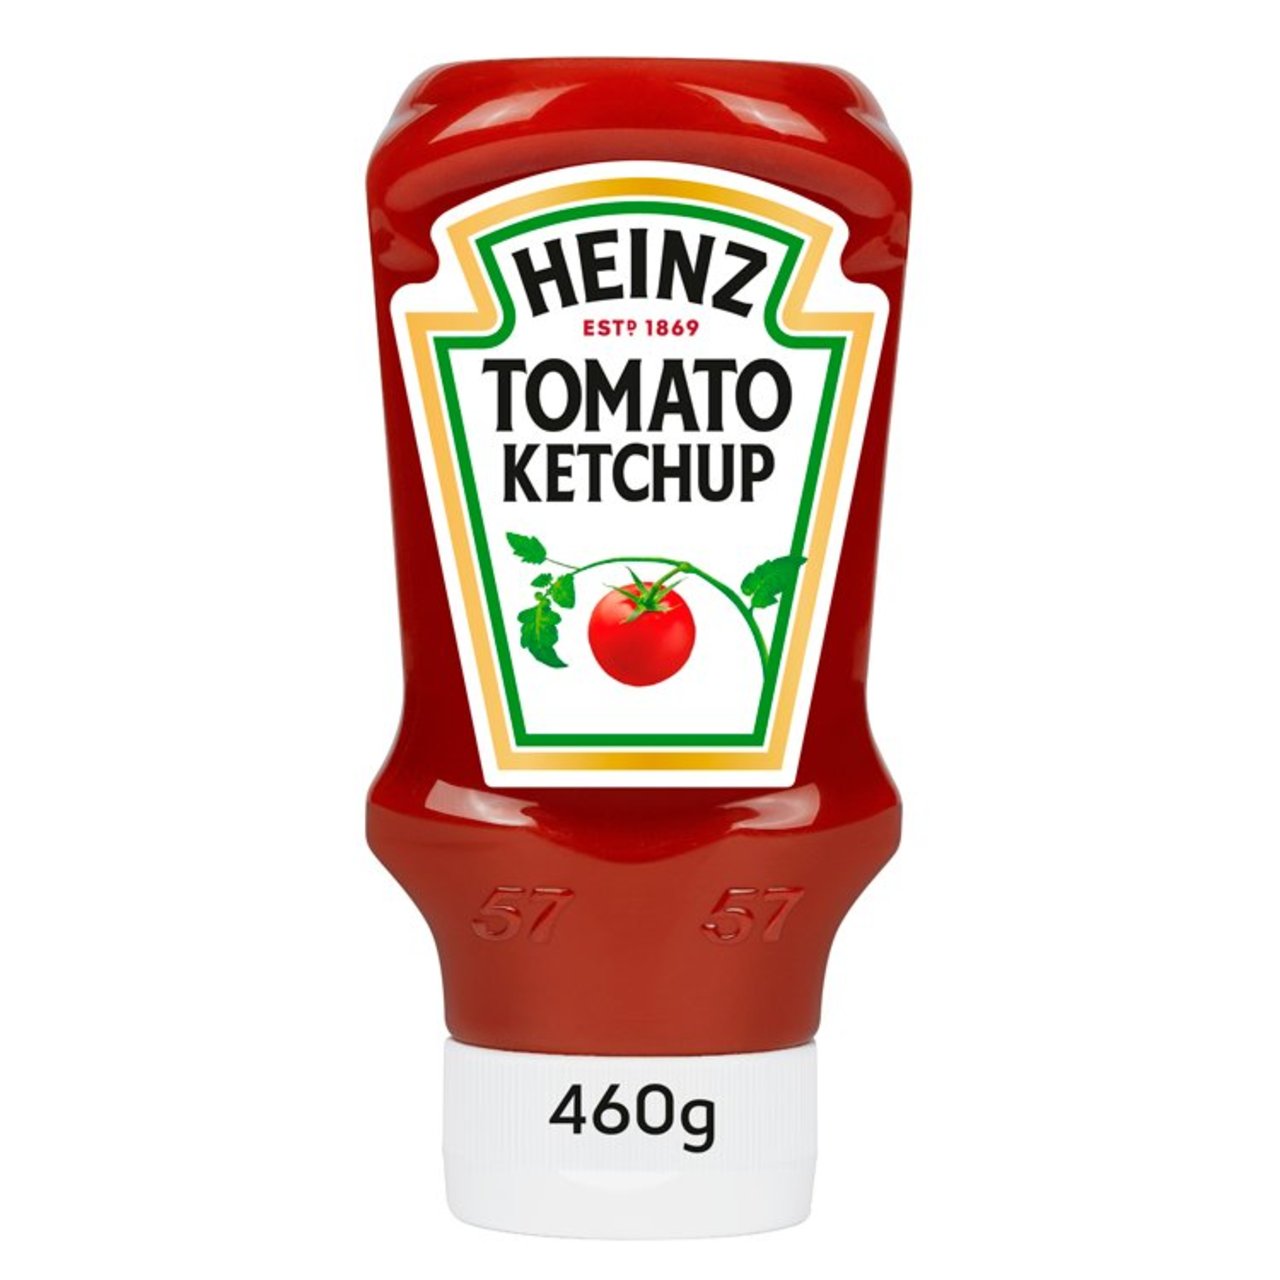 Heinz Tomato Ketchup 57 460g